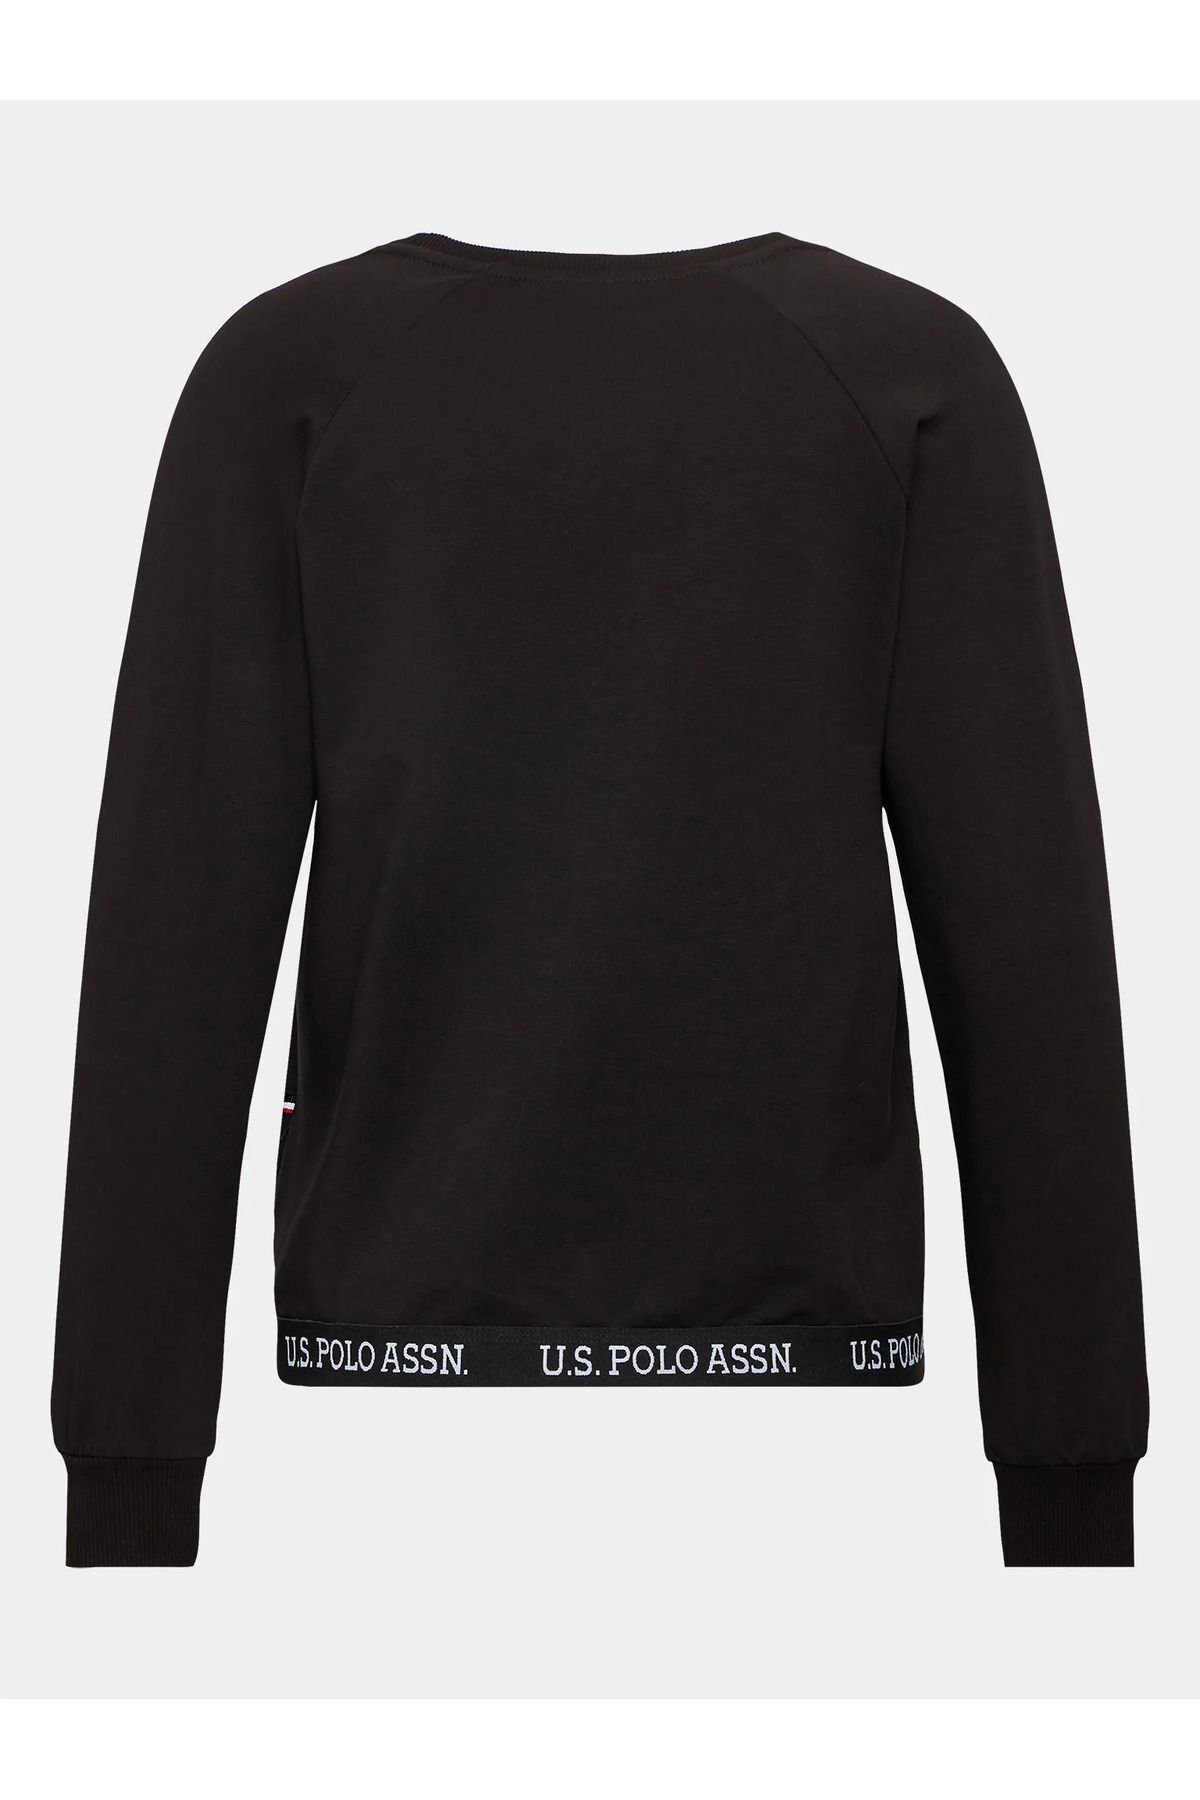 U.S. Polo Assn. Kadın Siyah Pamuklu 2 İplik Sweatshirt